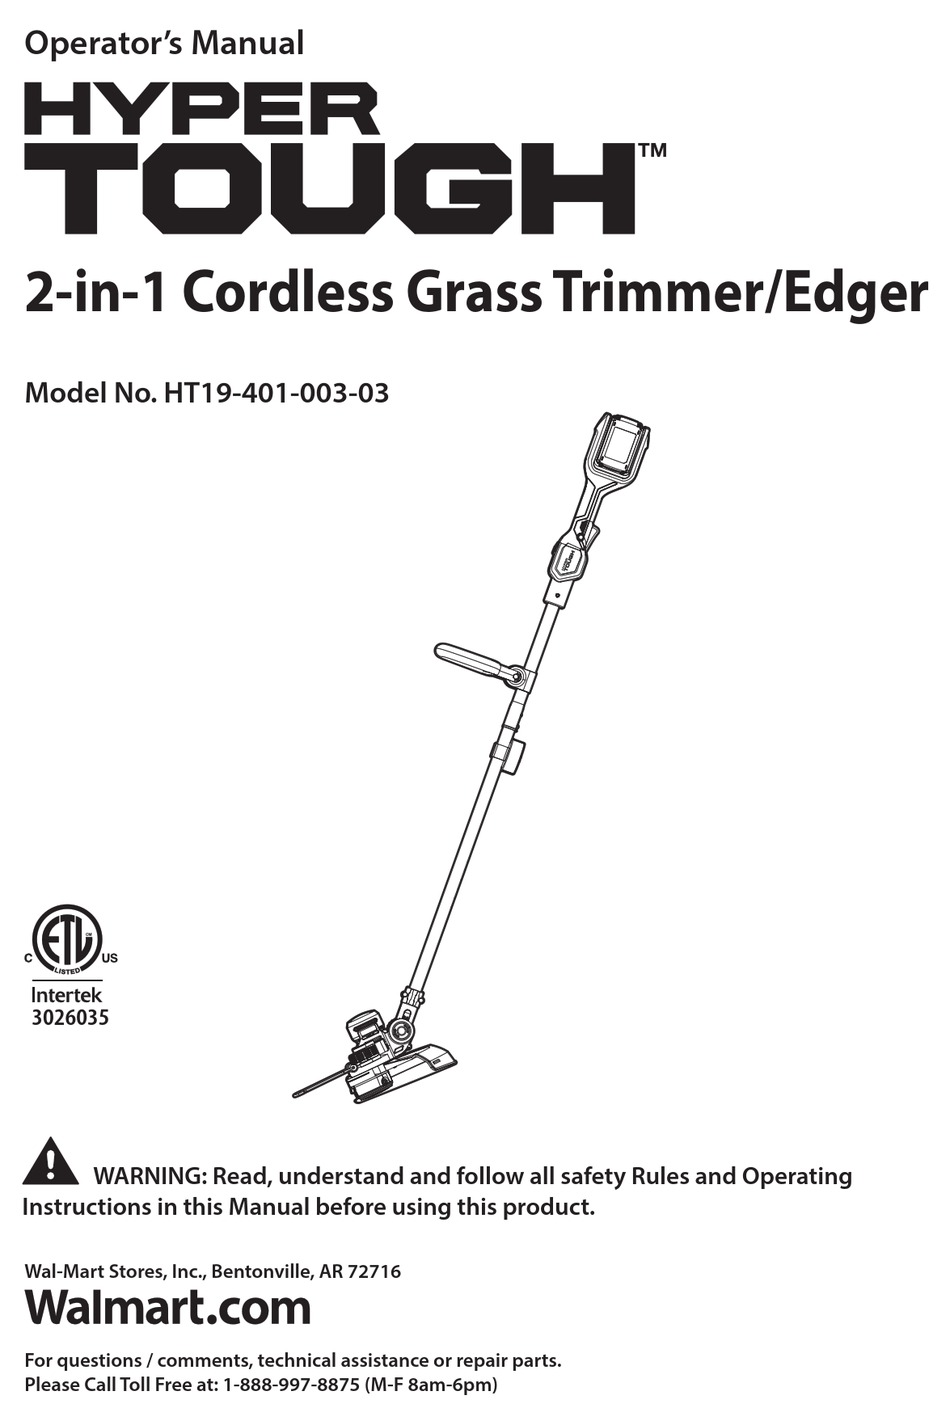 Hyper Tough Electric Lawn Mower User Manual